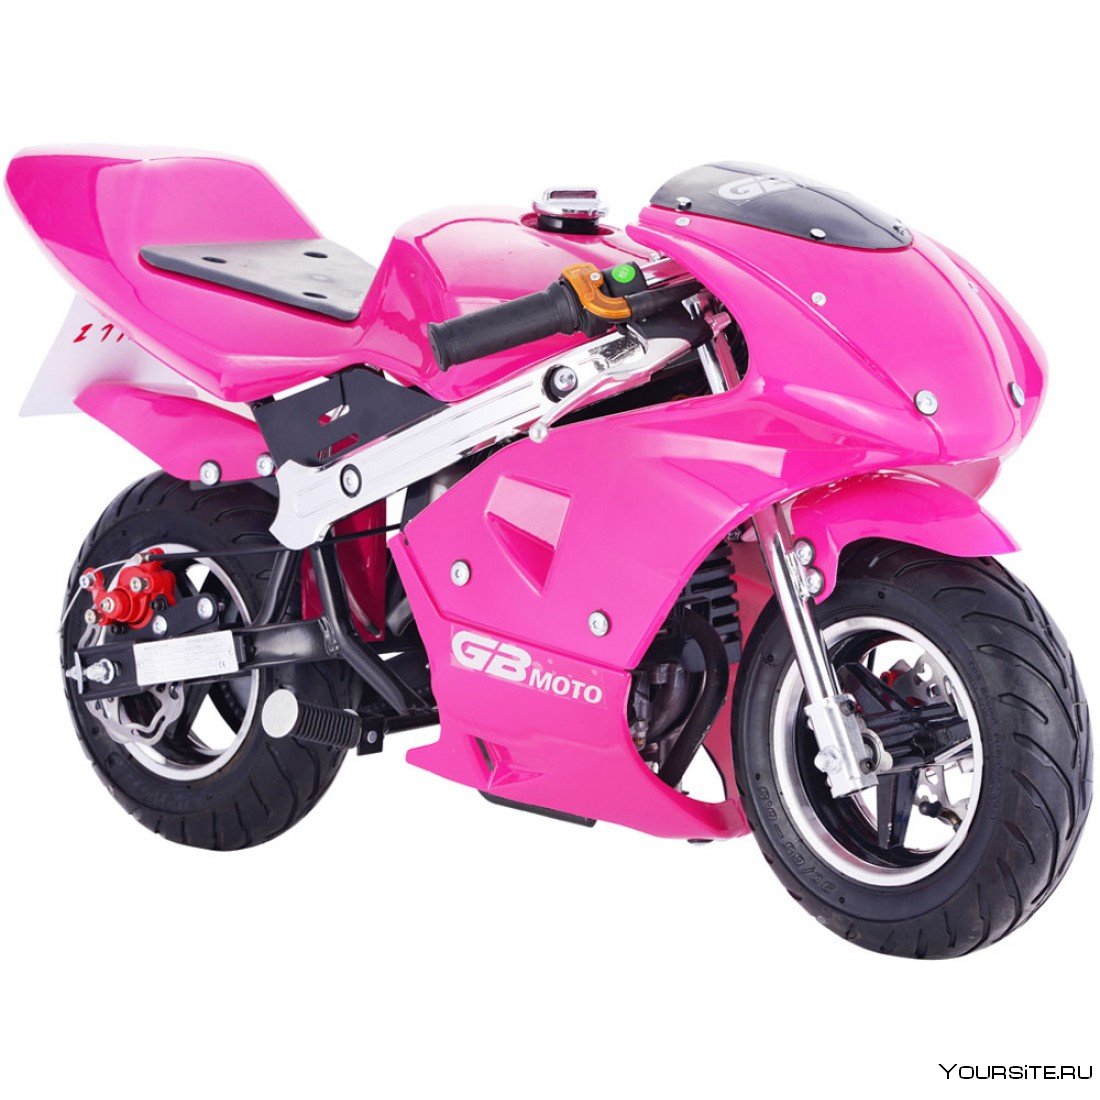 Мотоцикл купить 9. Racing motorbike детский электромотоцикл. "Электромотоцикл Moto JC 919". Pocket Bike 49cc. Электро мотоцикл Крейсс т.3 для девочек.